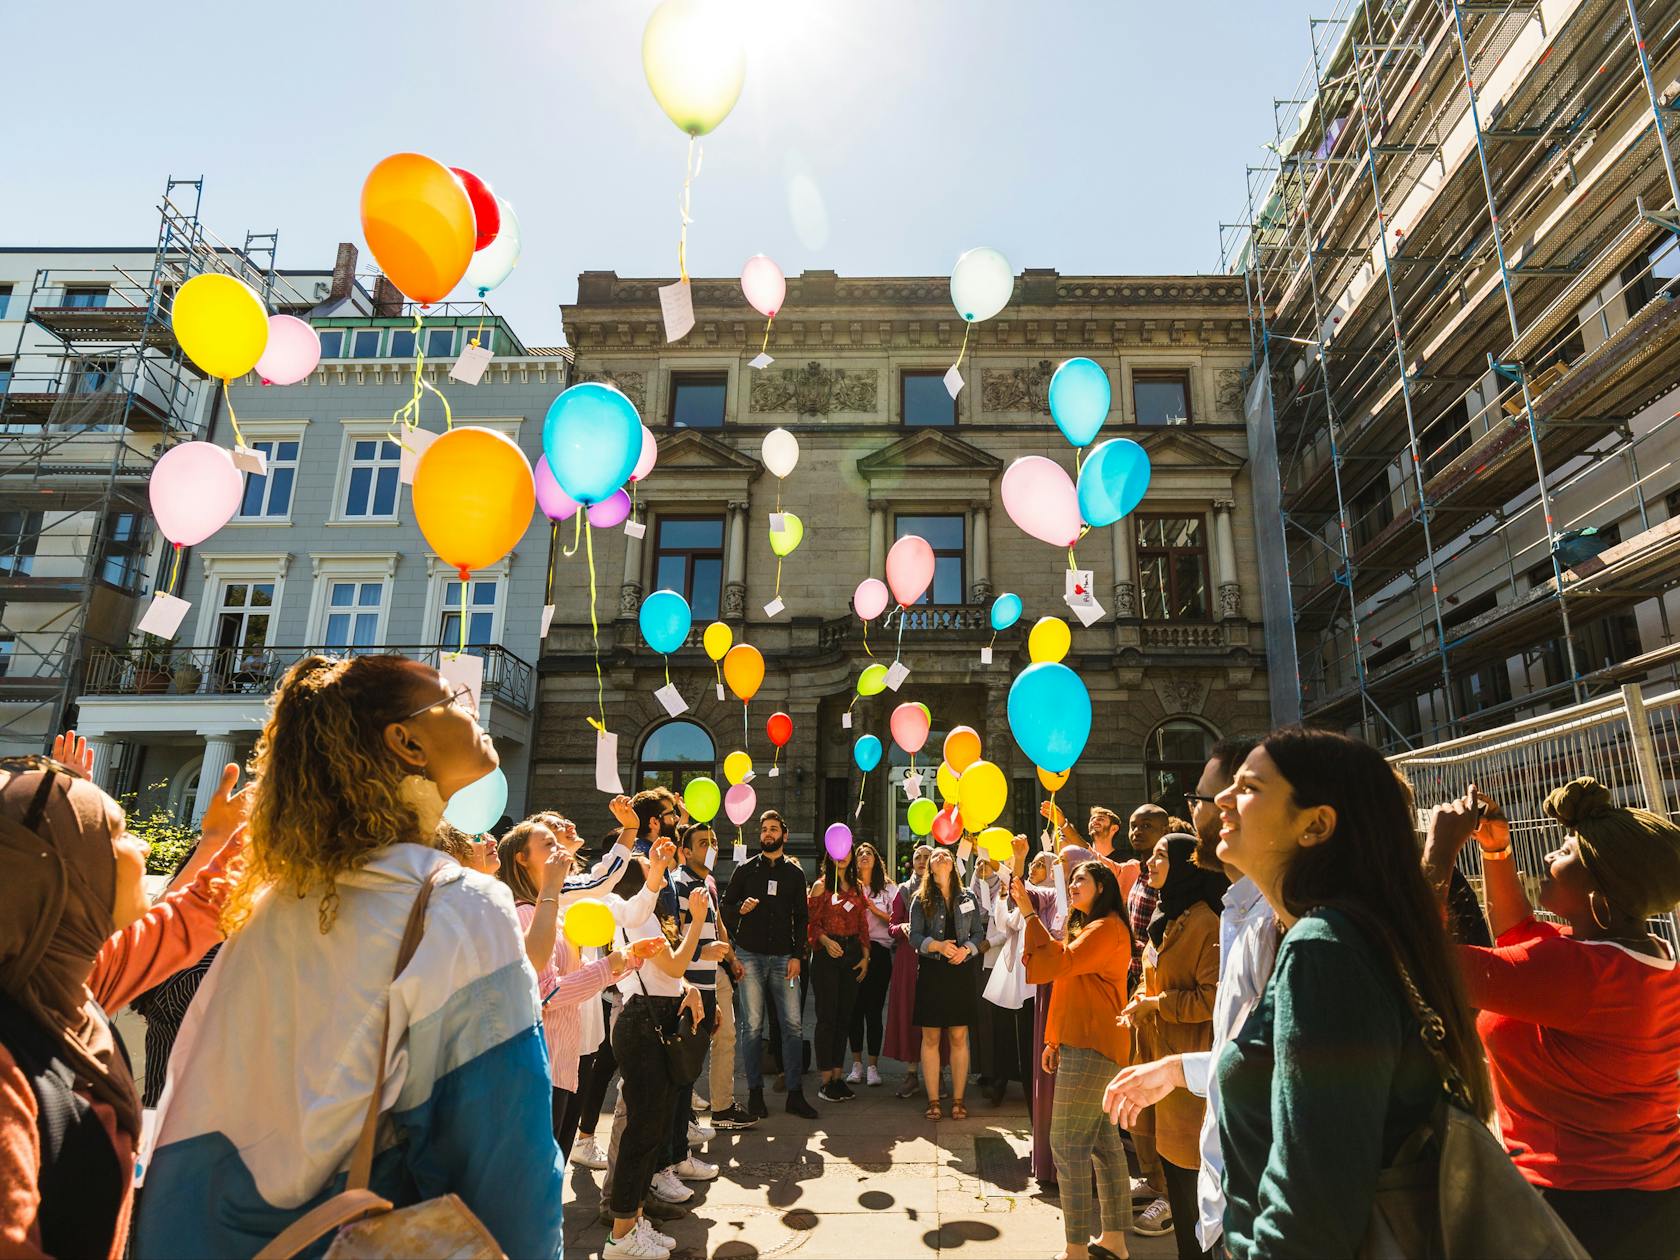 Auf dem Foto ist eine Gruppe junger Menschen abgebildet, die vor einem Gebäude in einem Halbkreis stehen. Die Personen halten alle bunte Luftballons an Schnuren in der Hand und sind dabei, diese in die Luft fliegen zu lassen.
